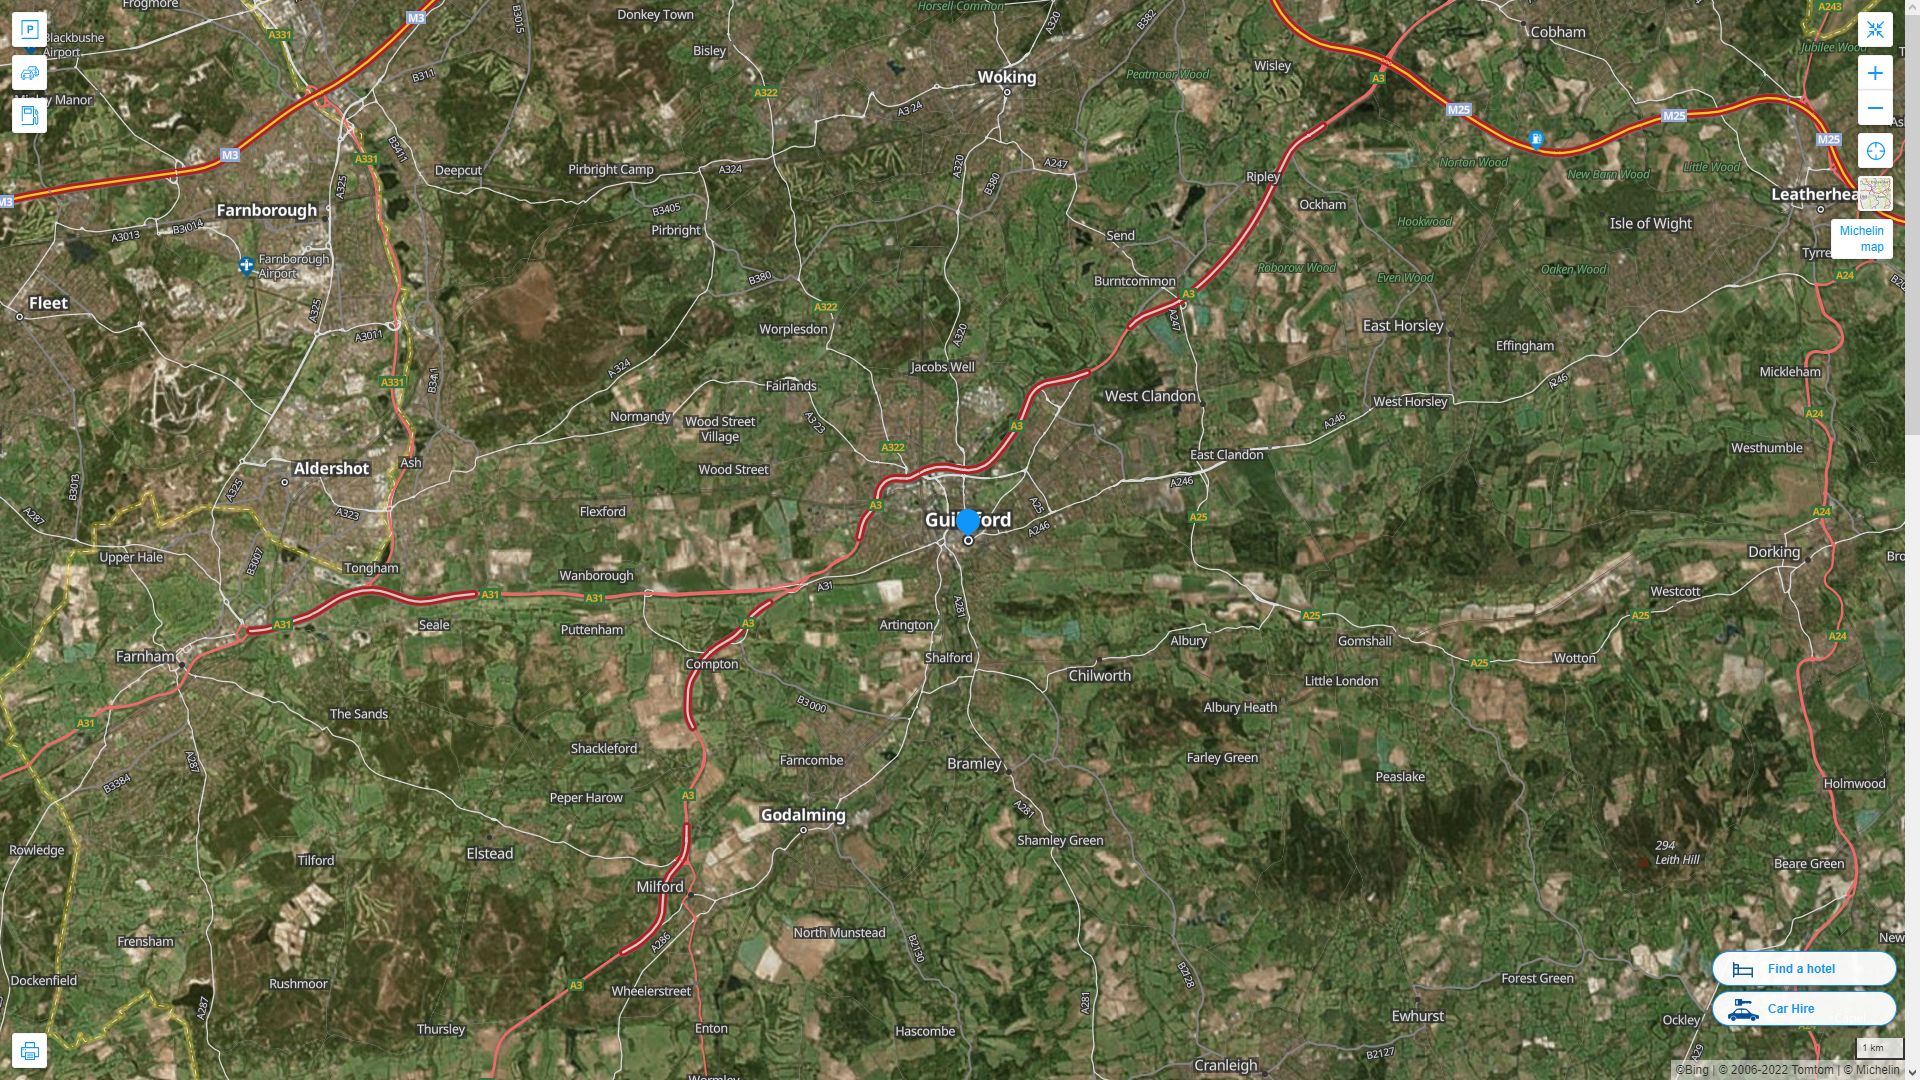 Guildford Royaume Uni Autoroute et carte routiere avec vue satellite